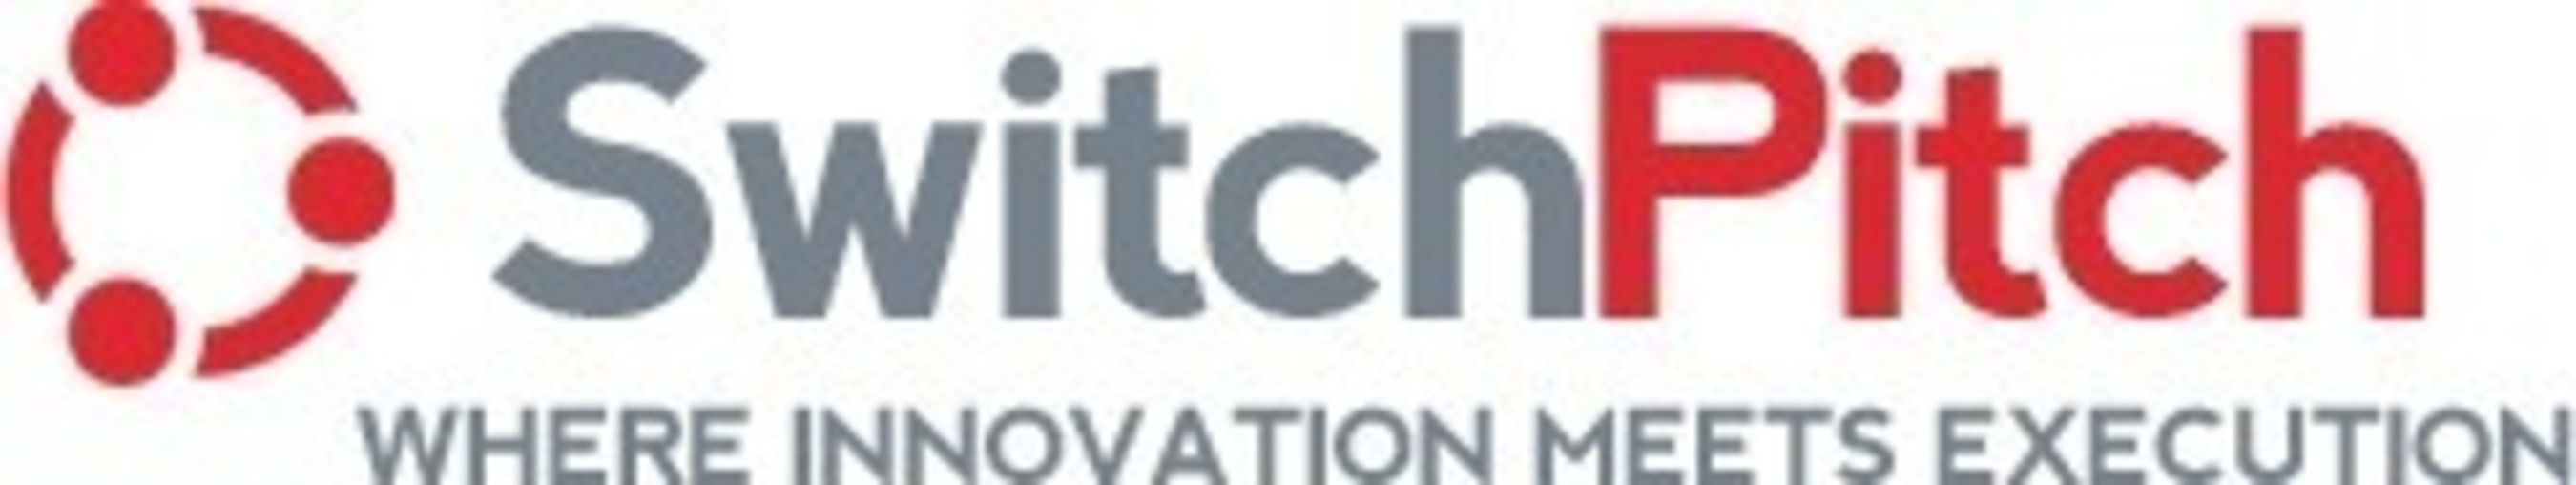 SwitchPitch logo (PRNewsFoto/SwitchPitch)